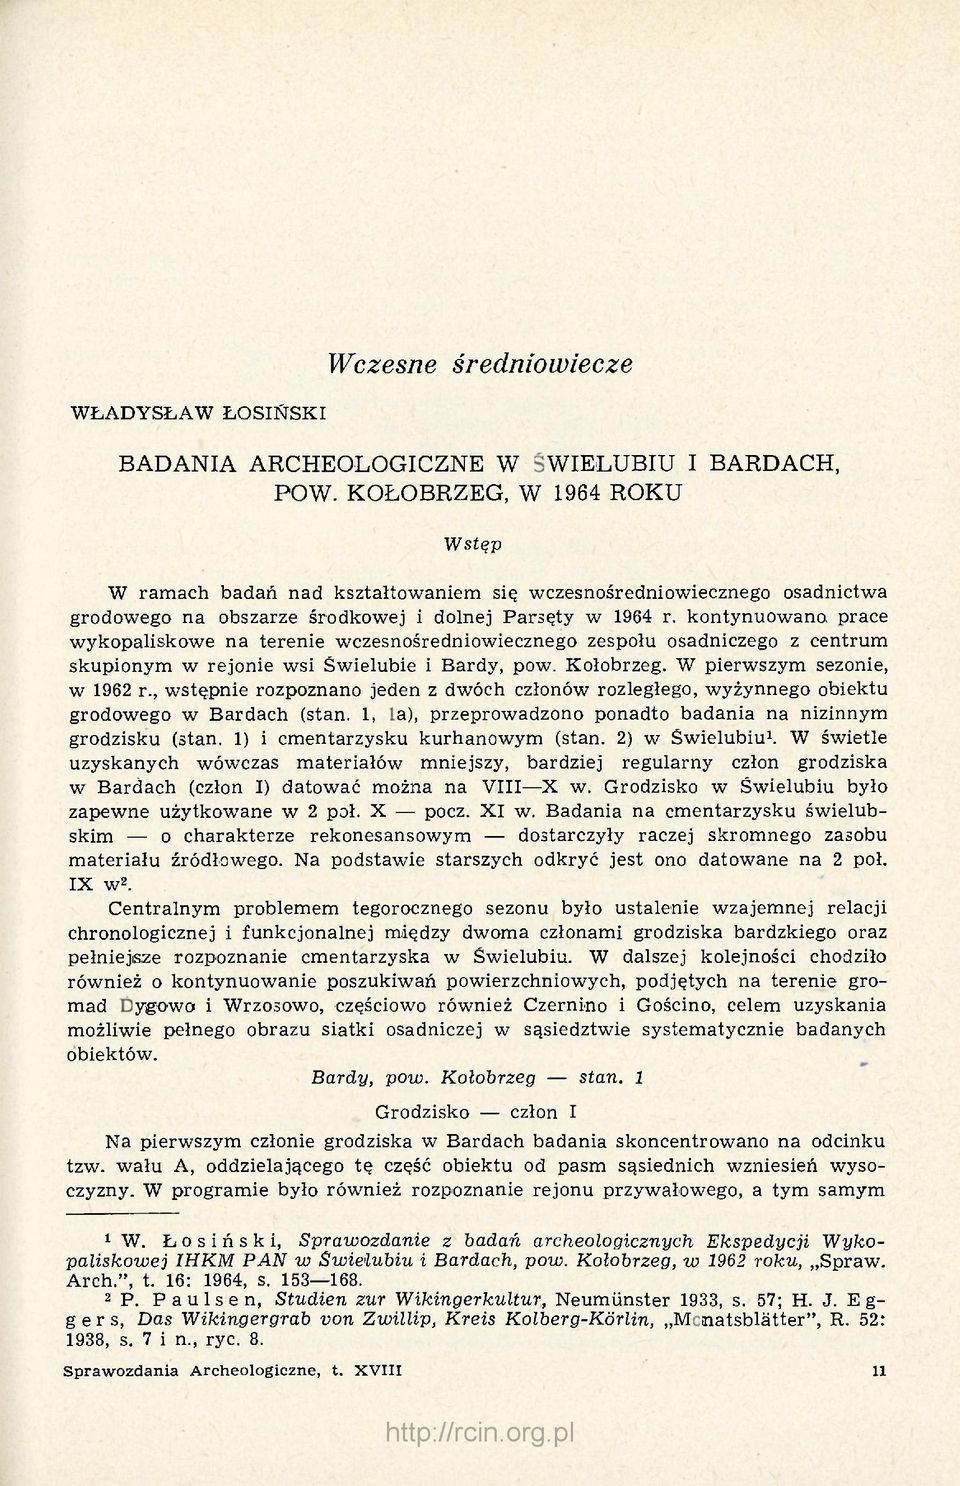 kontynuowano, prace wykopaliskowe na terenie wczesnośredniowiecznego zespołu osadniczego z centrum skupionym w rejonie wsi Świelubie i Bardy, pow. Kołobrzeg. W pierwszym sezonie, w 1962 r.